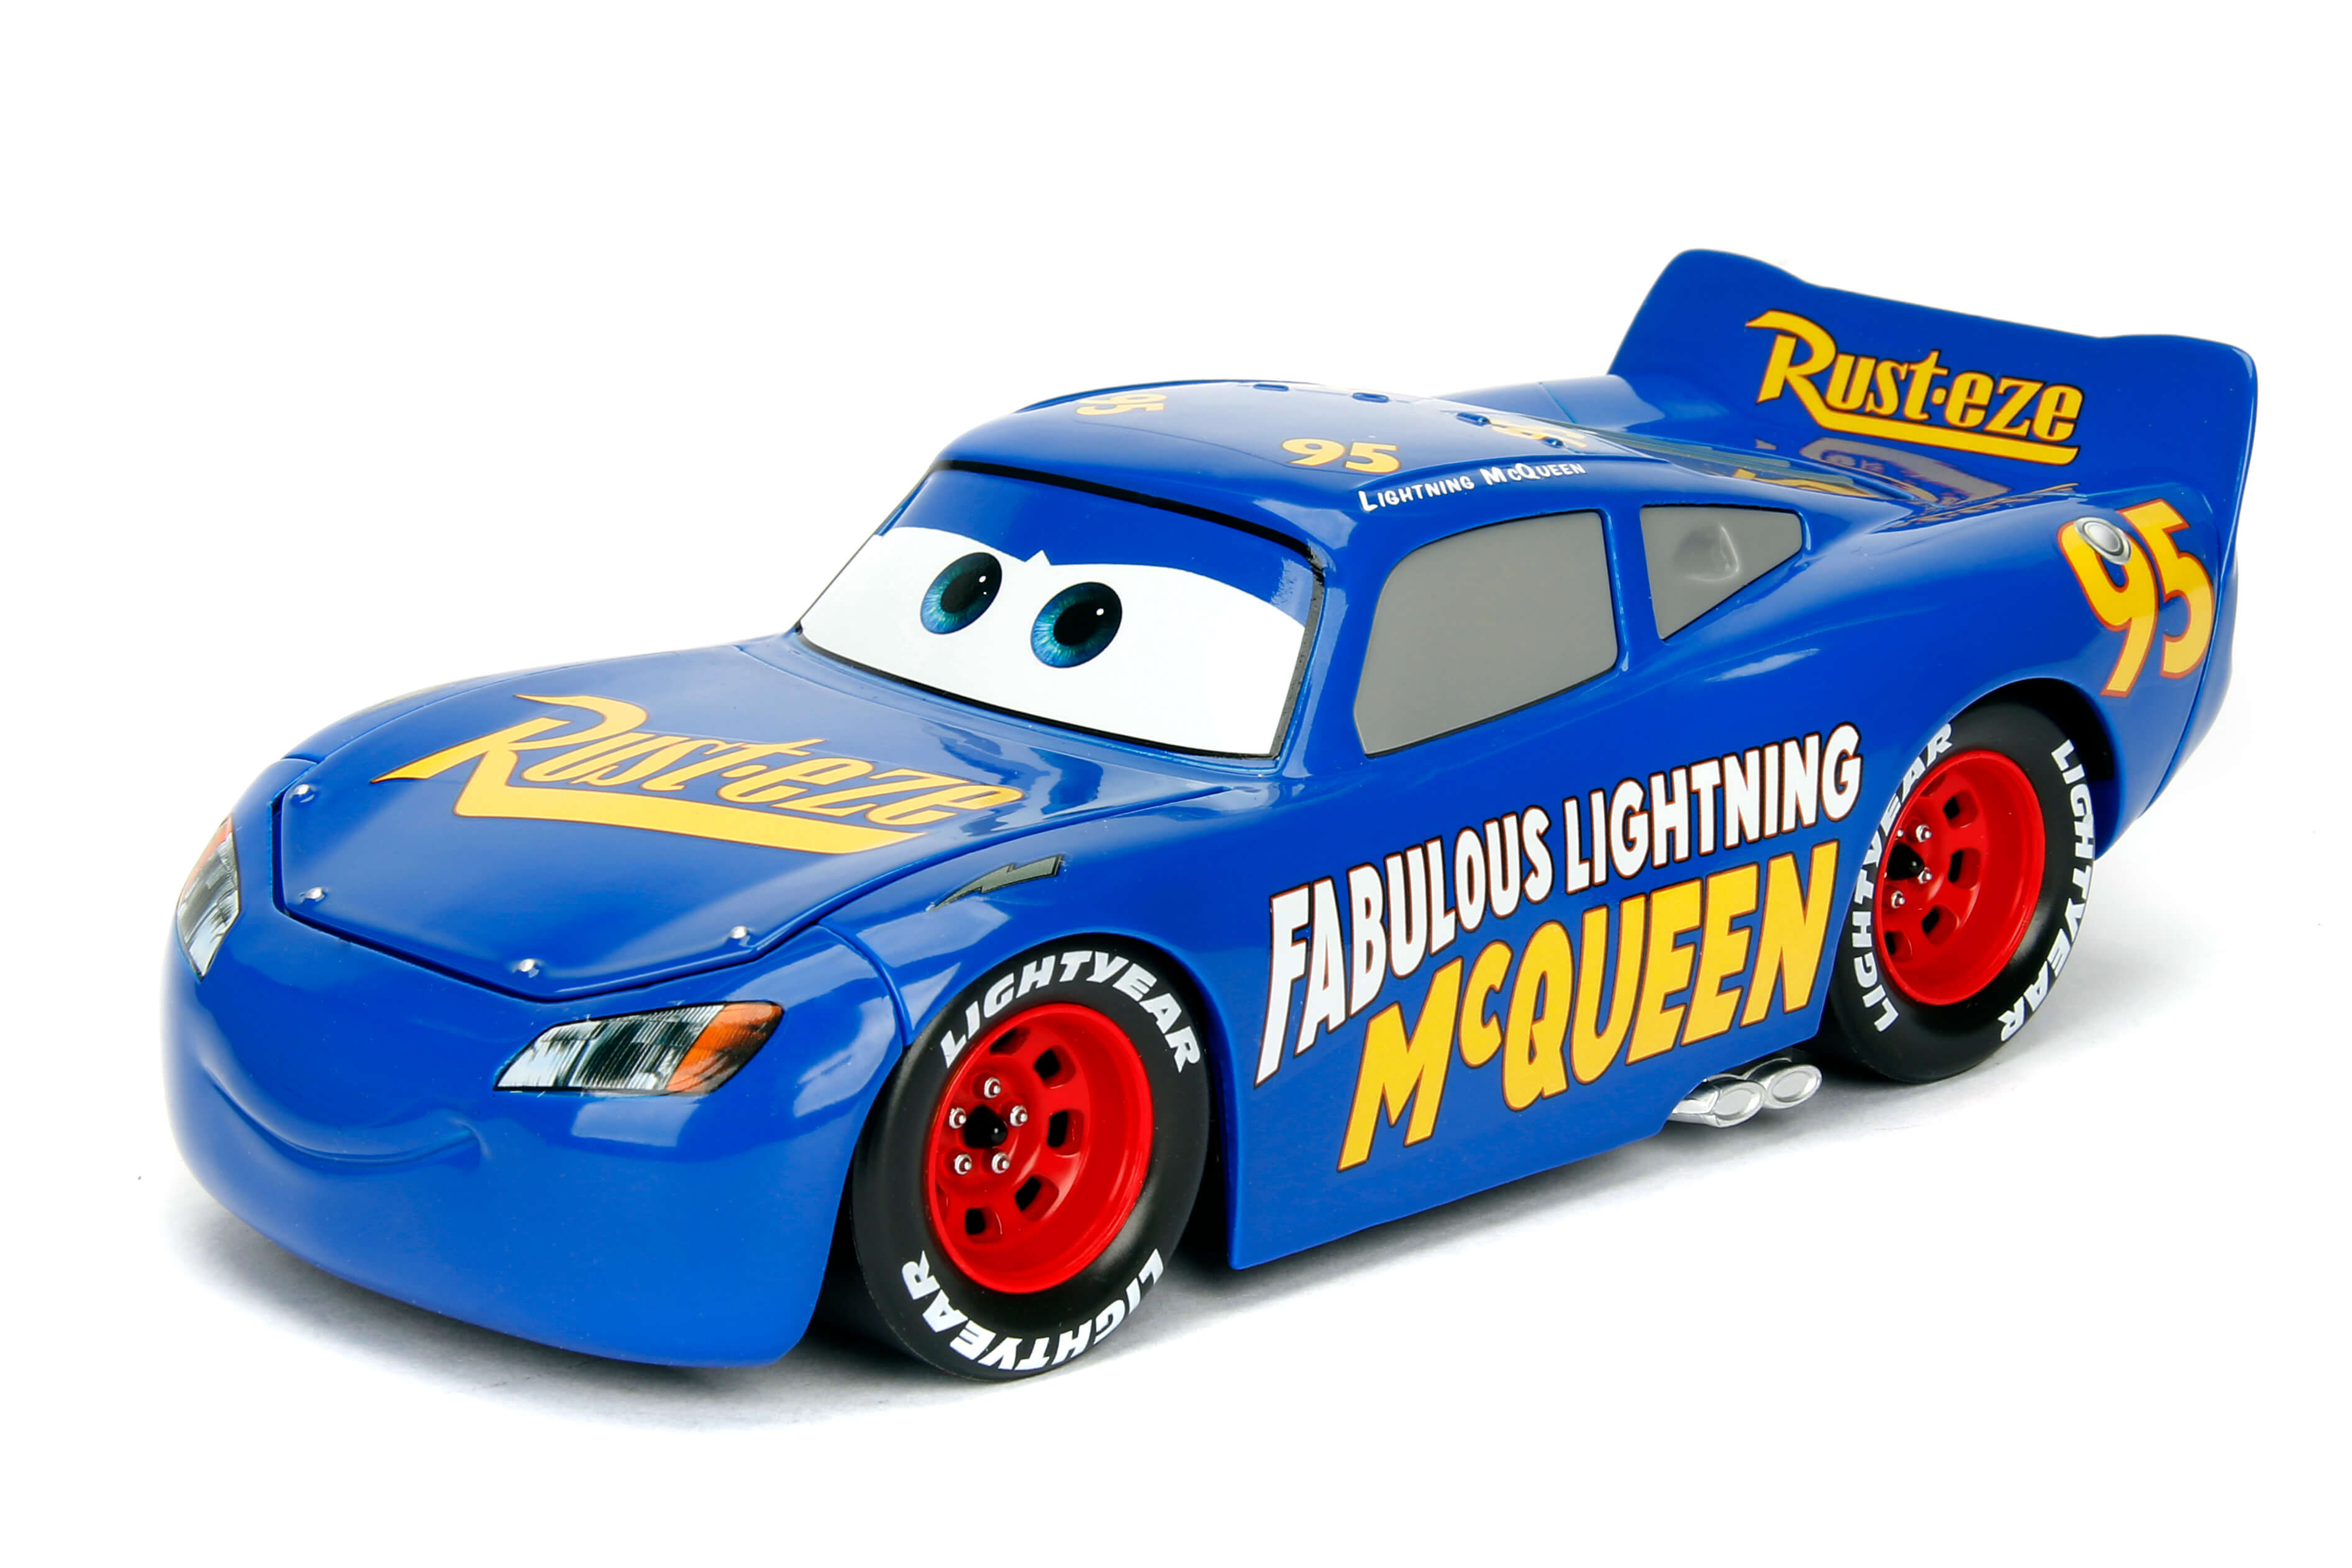 Fabulous Lightning McQueen - Cars 3 Standup *2551